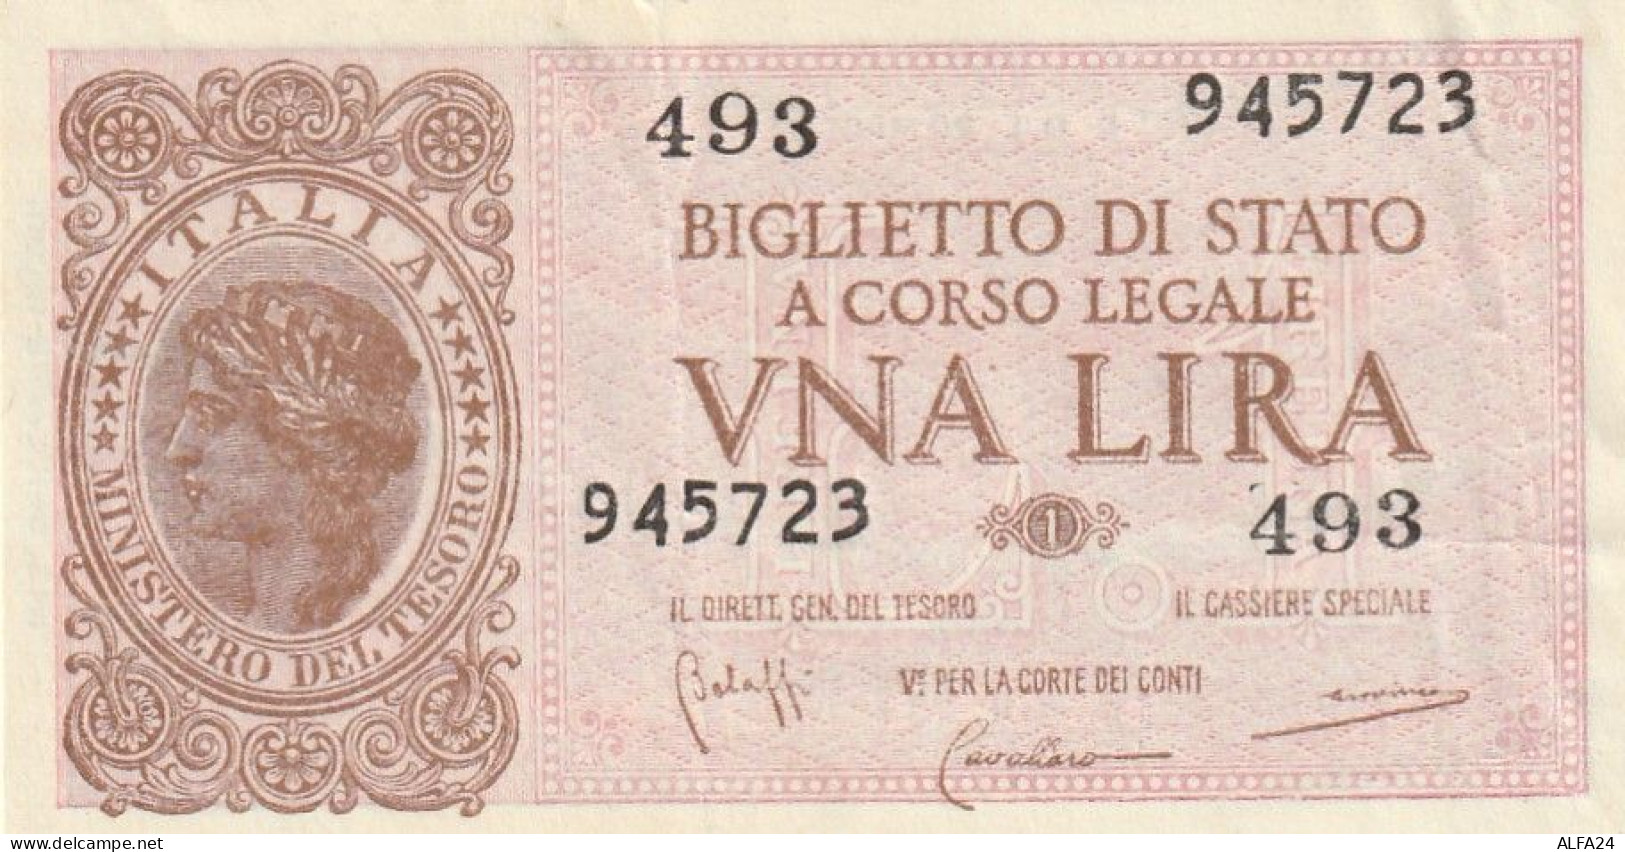 BANCONOTA BIGLIETTO DI STATO ITALIA 1 LIRA EF  (B_340 - Italia – 1 Lira